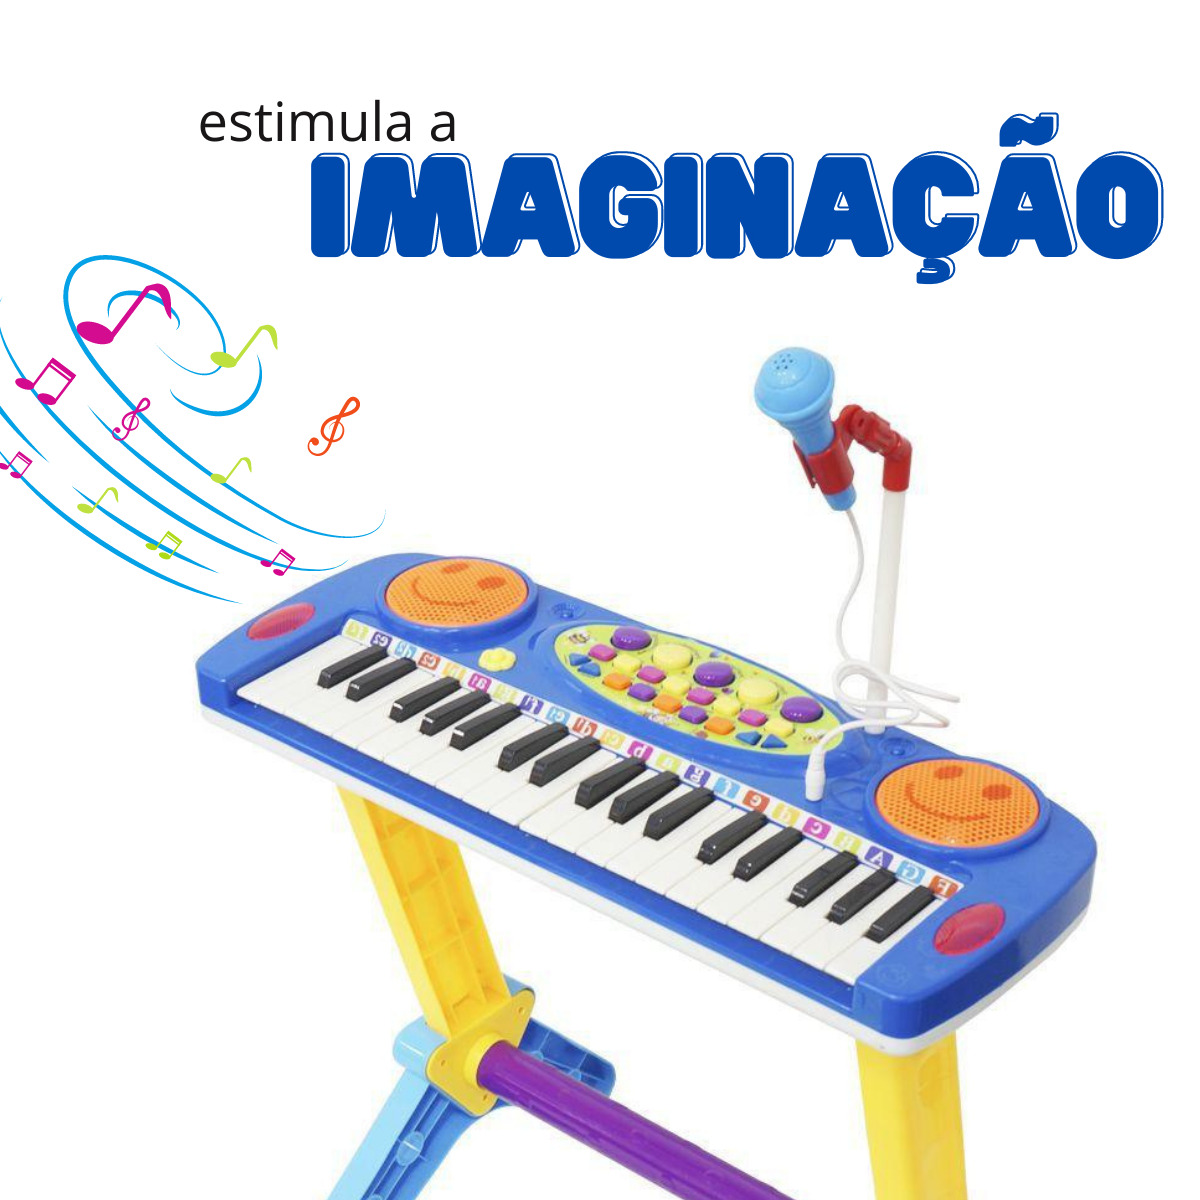 PIANO INFANTIL ELETRÔNICO C/ MICROFONE E EFEITOS DE DJ (AZUL)